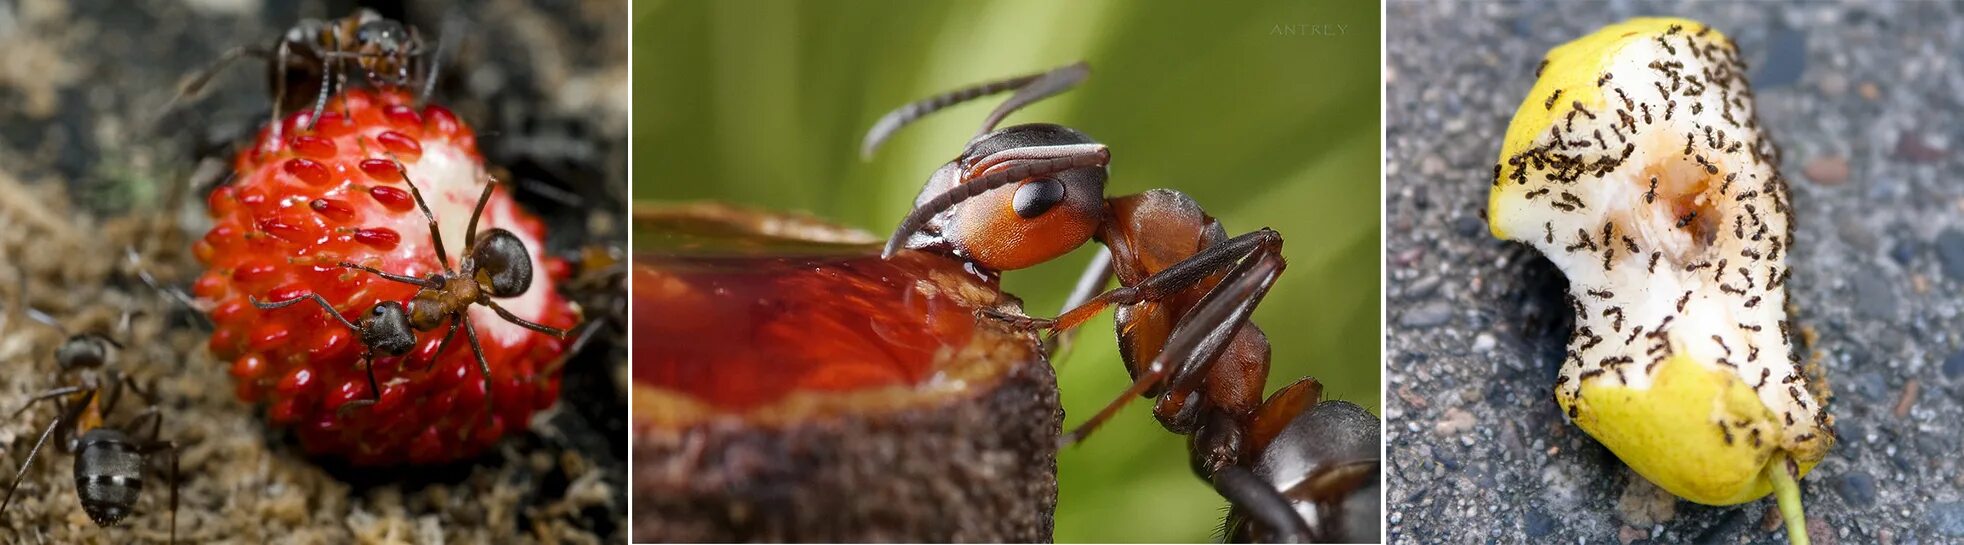 Можно ли есть муравьев